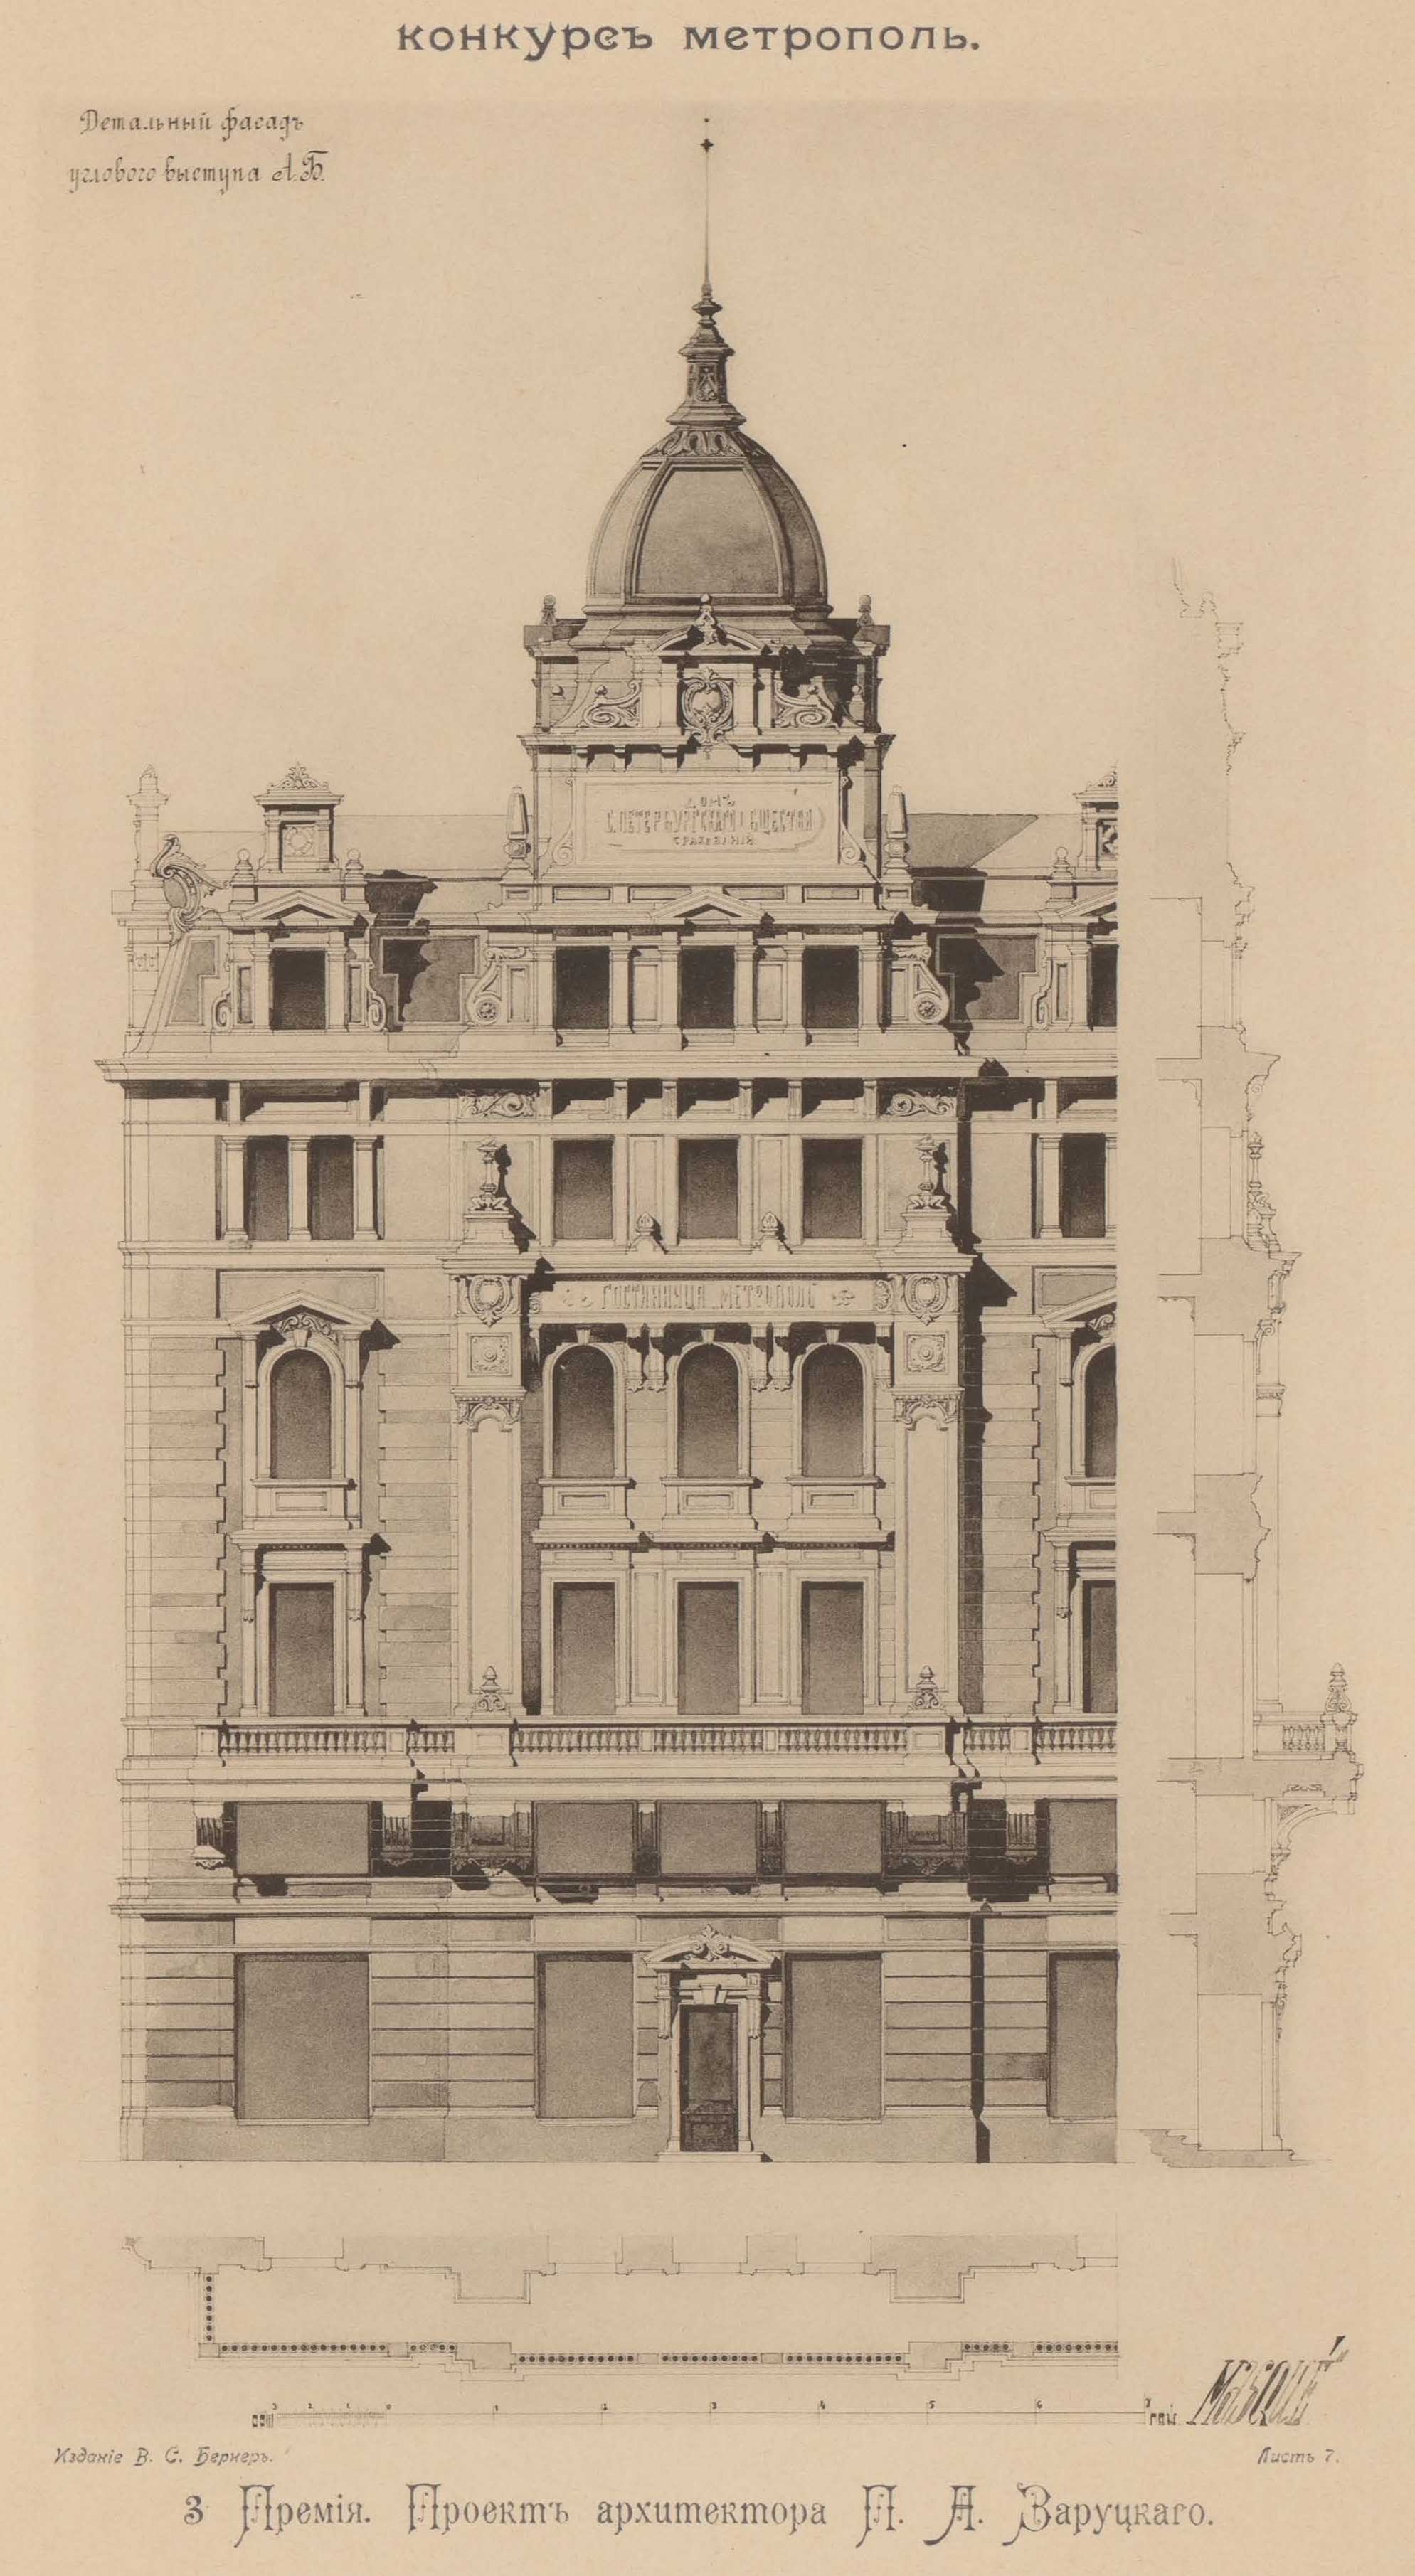 Конкурс на фасад гостиницы «Метрополь» (1899). 3-я премия. Проект архитектора П. А. Заруцкого. Детальный фасад углового выступа